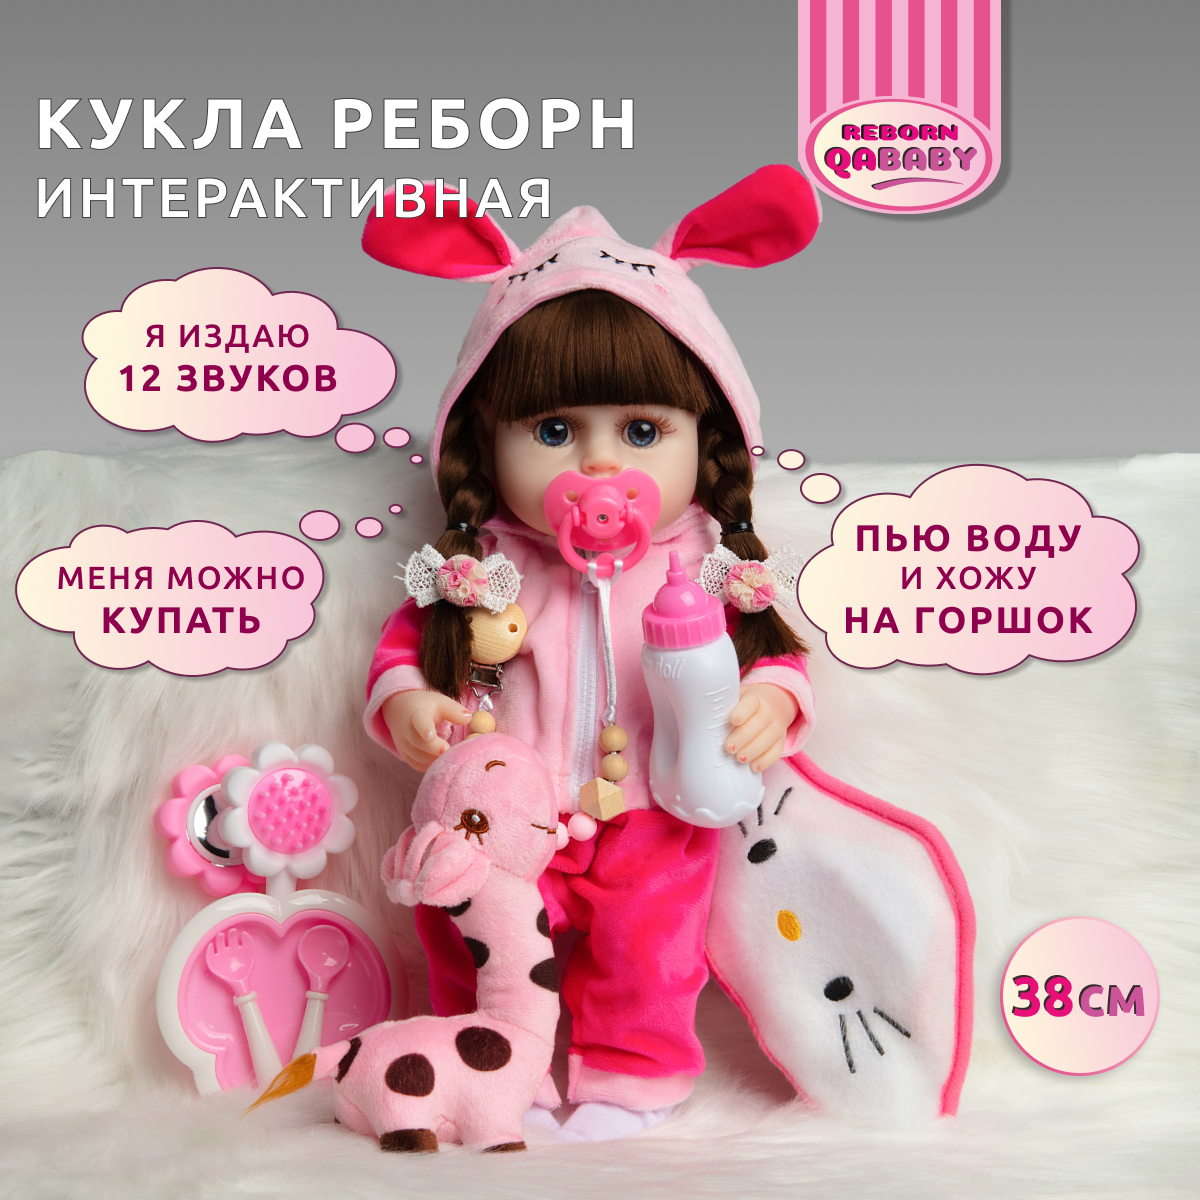 Кукла Реборн QA BABY Натали девочка интерактивная Пупс набор игрушки для ванной для девочки 38 см 3809 - фото 1